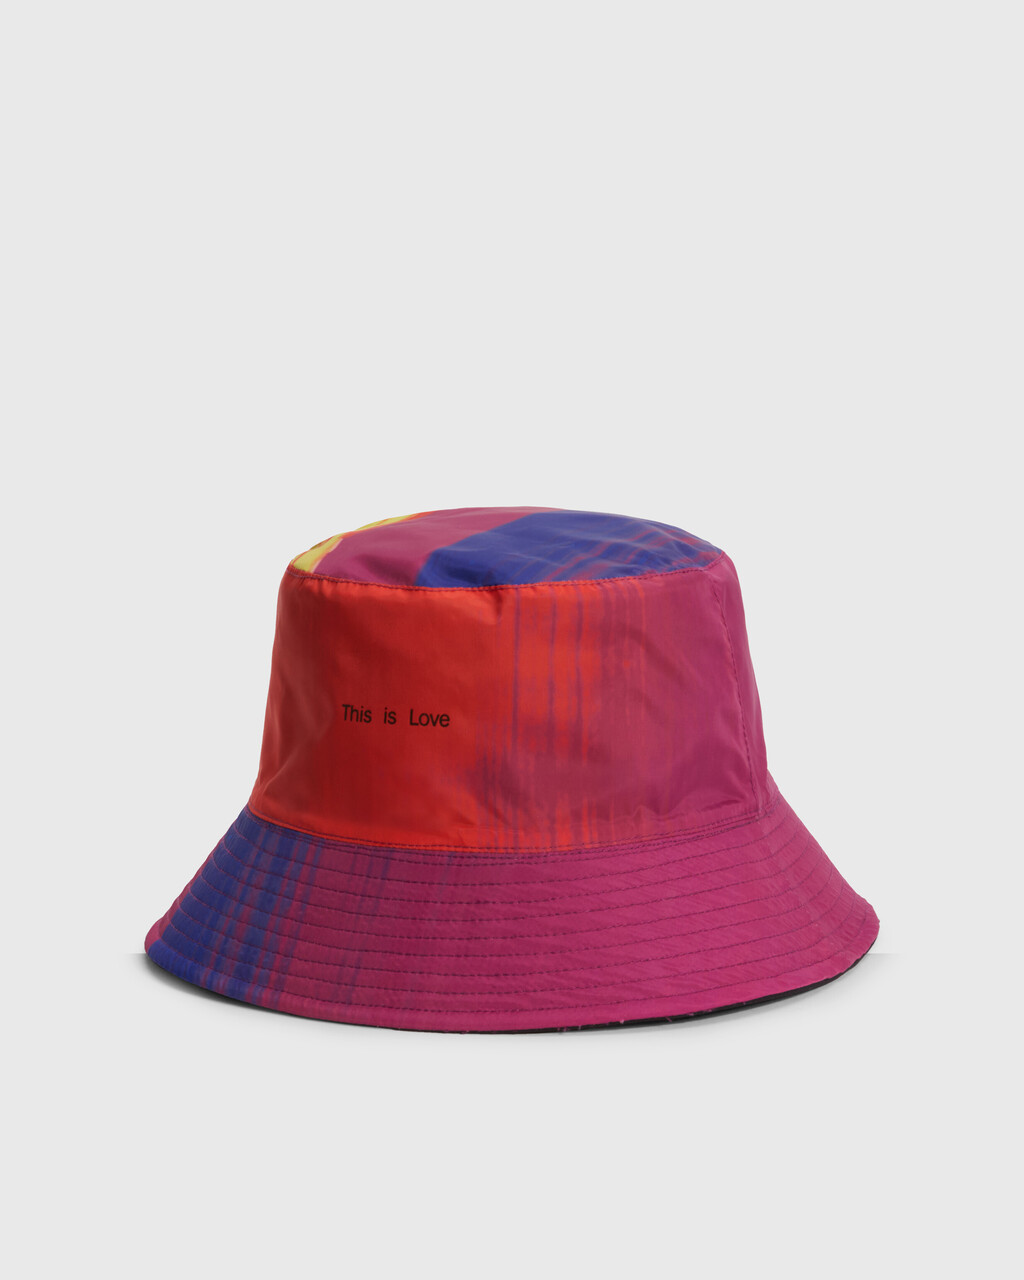 PRIDE 雙面漁夫帽, Black/Print, hi-res